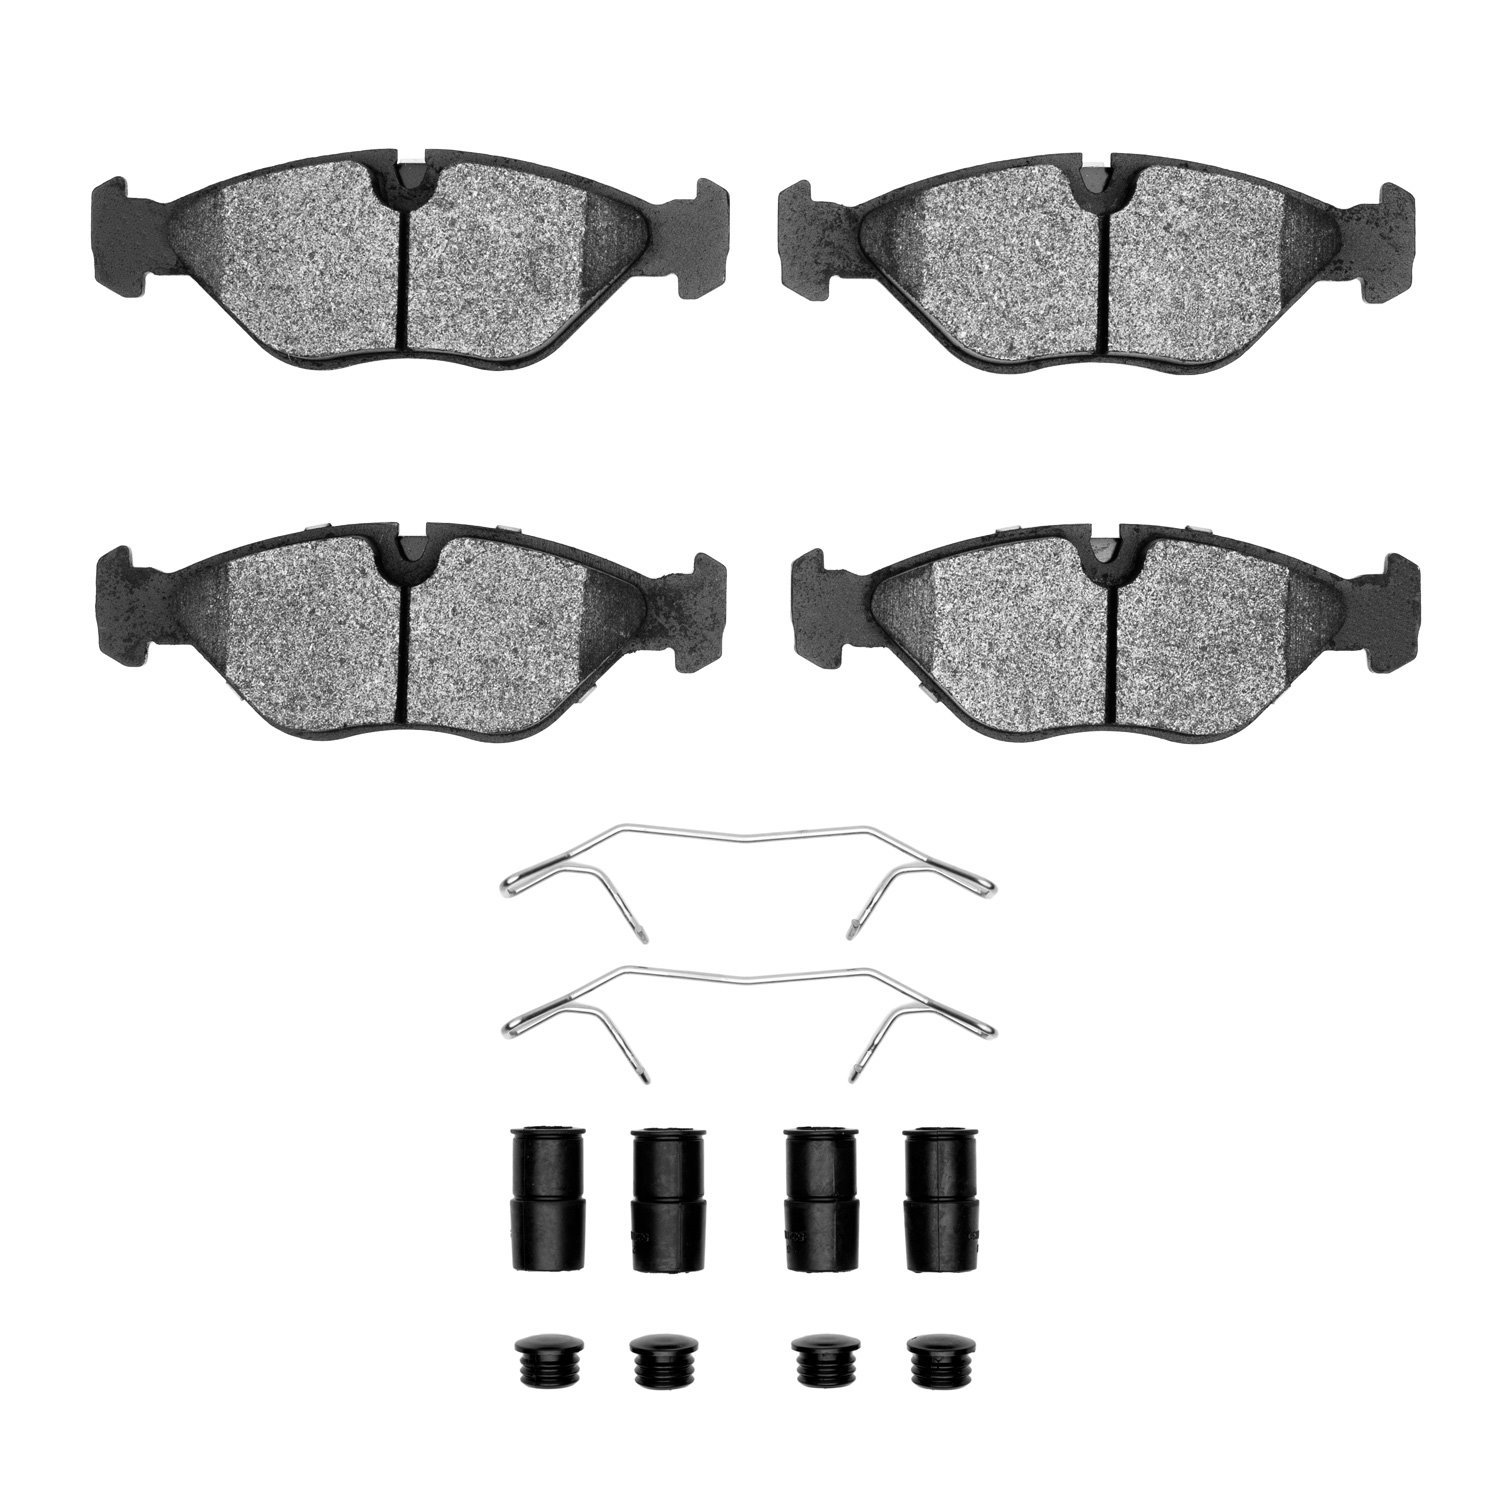 1311-0403-01 3000-Series Semi-Metallic Brake Pads & Hardware Kit, 1988-1998 GM, Position: Front